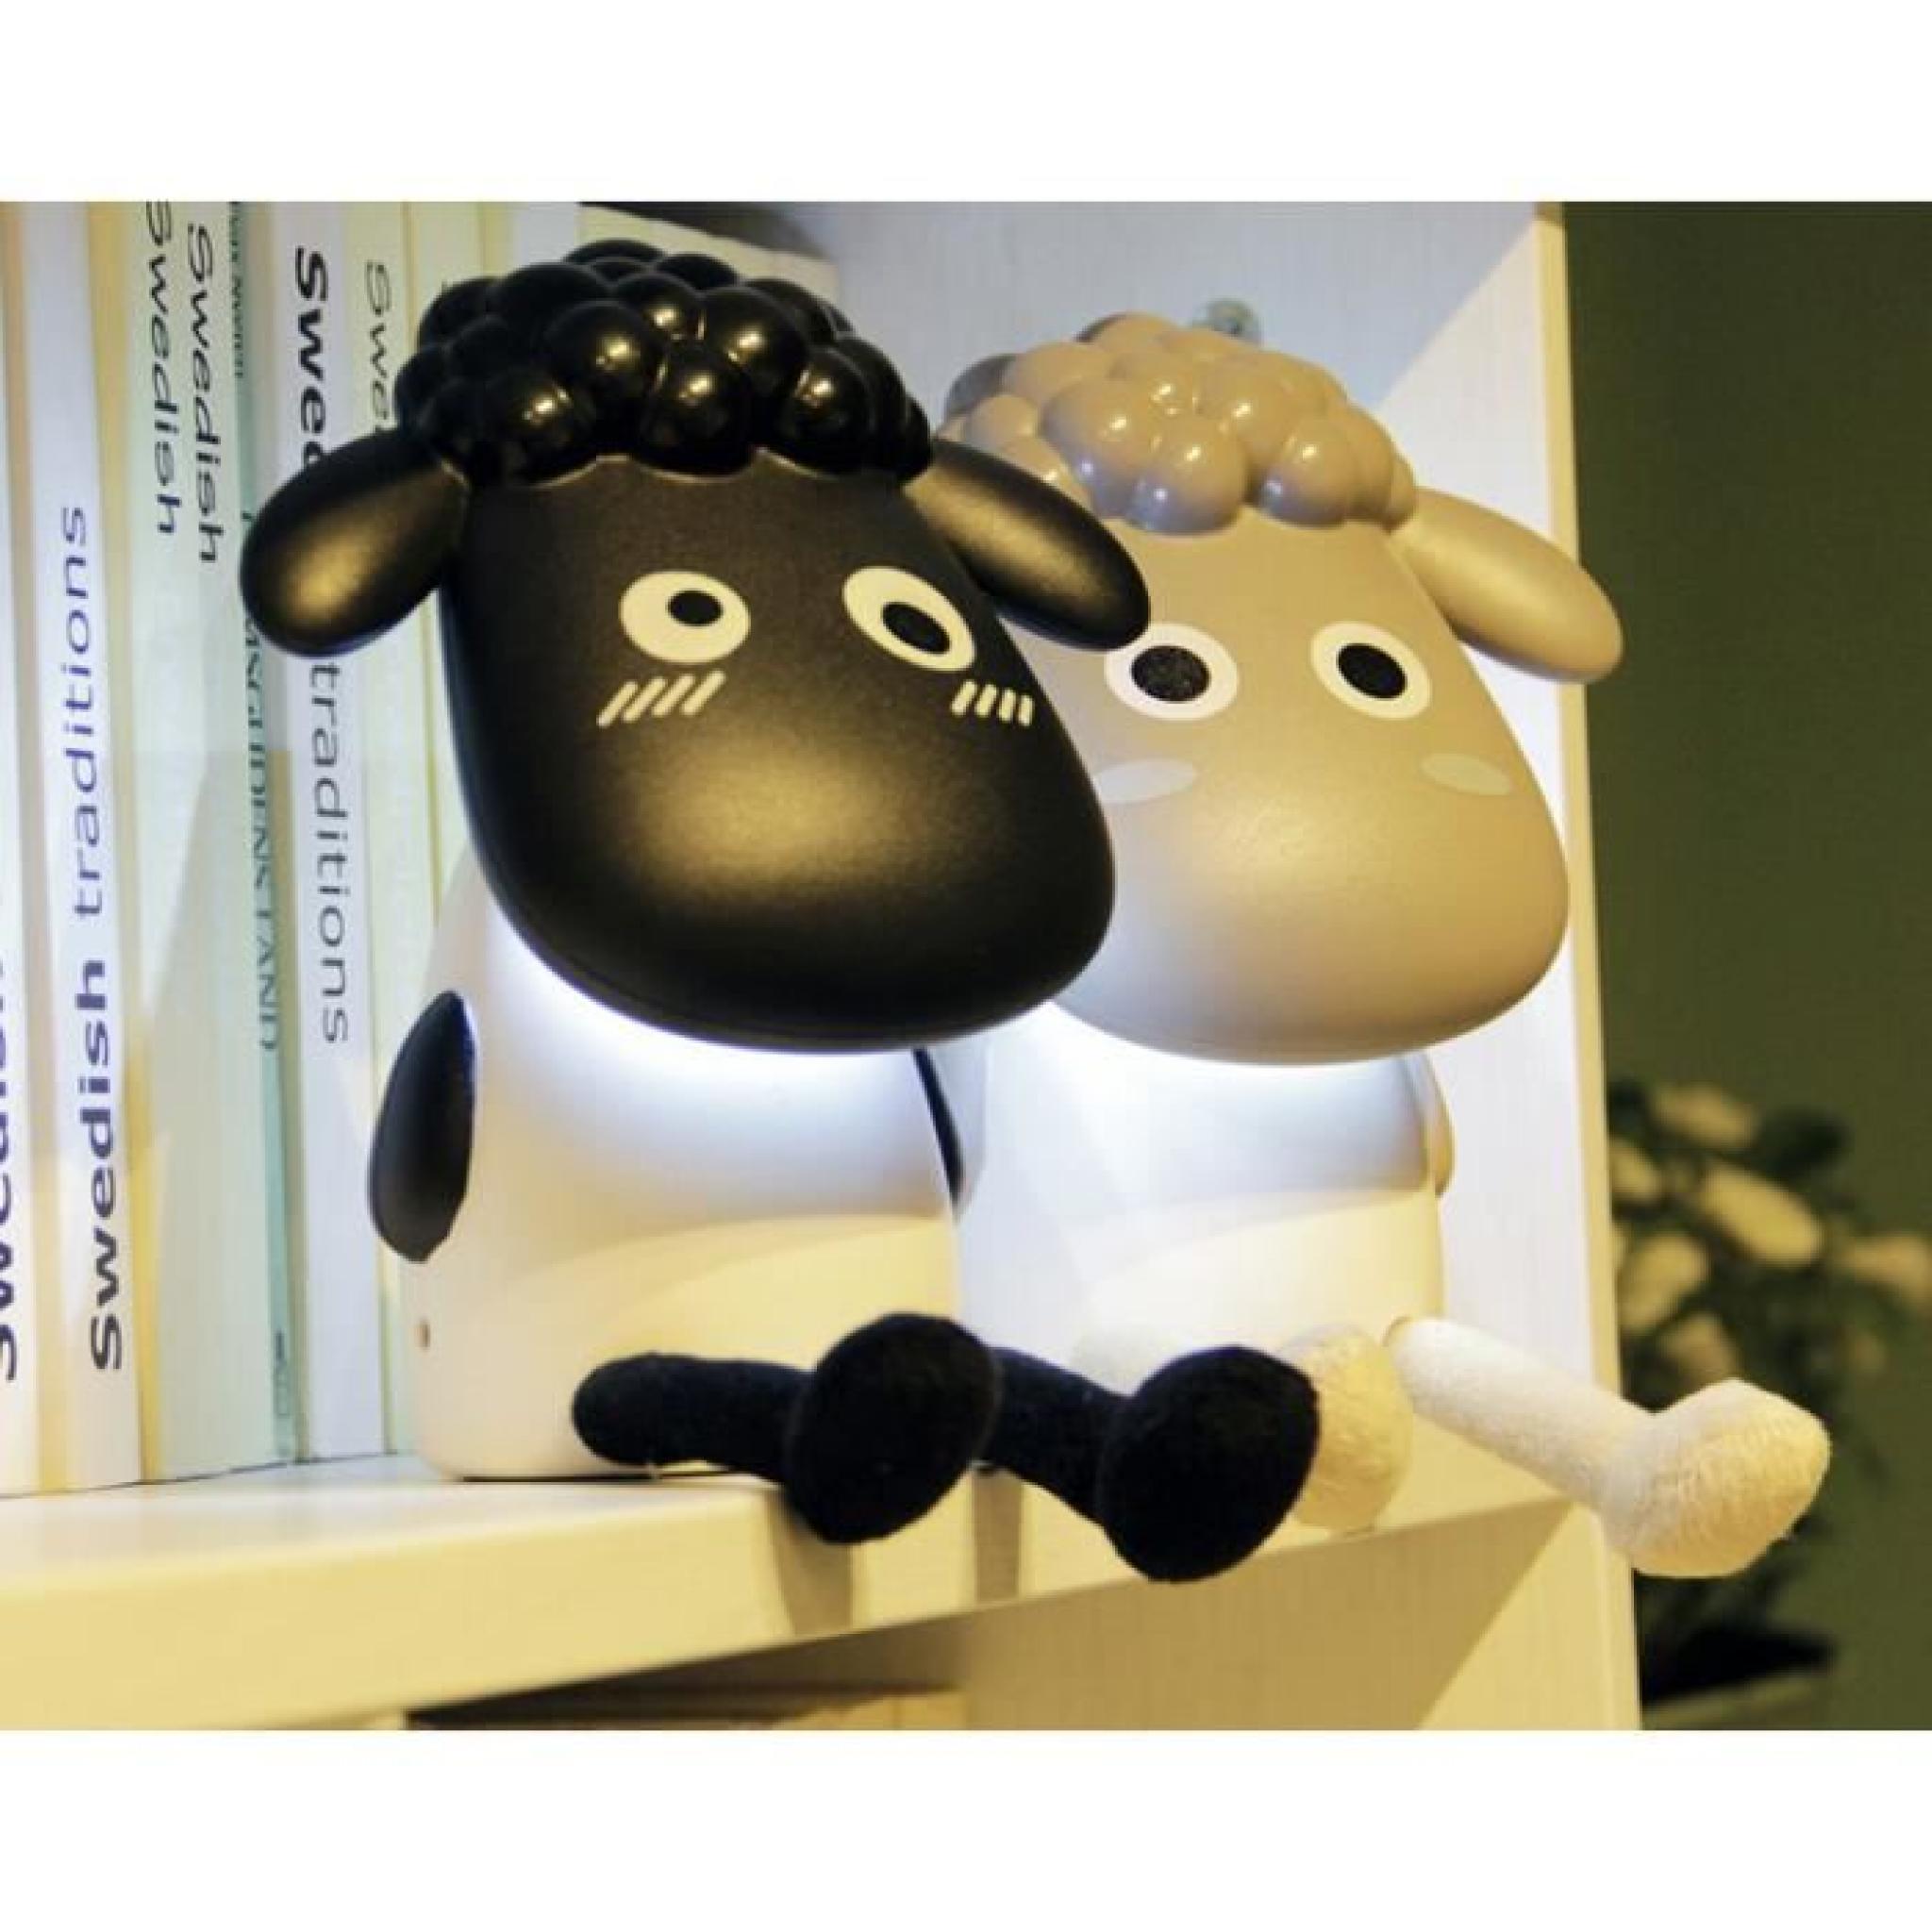 moutons conduit lampe de lecture USB rechargeable étude oeil de la lampe Cartoon petite lampe (noir) pas cher